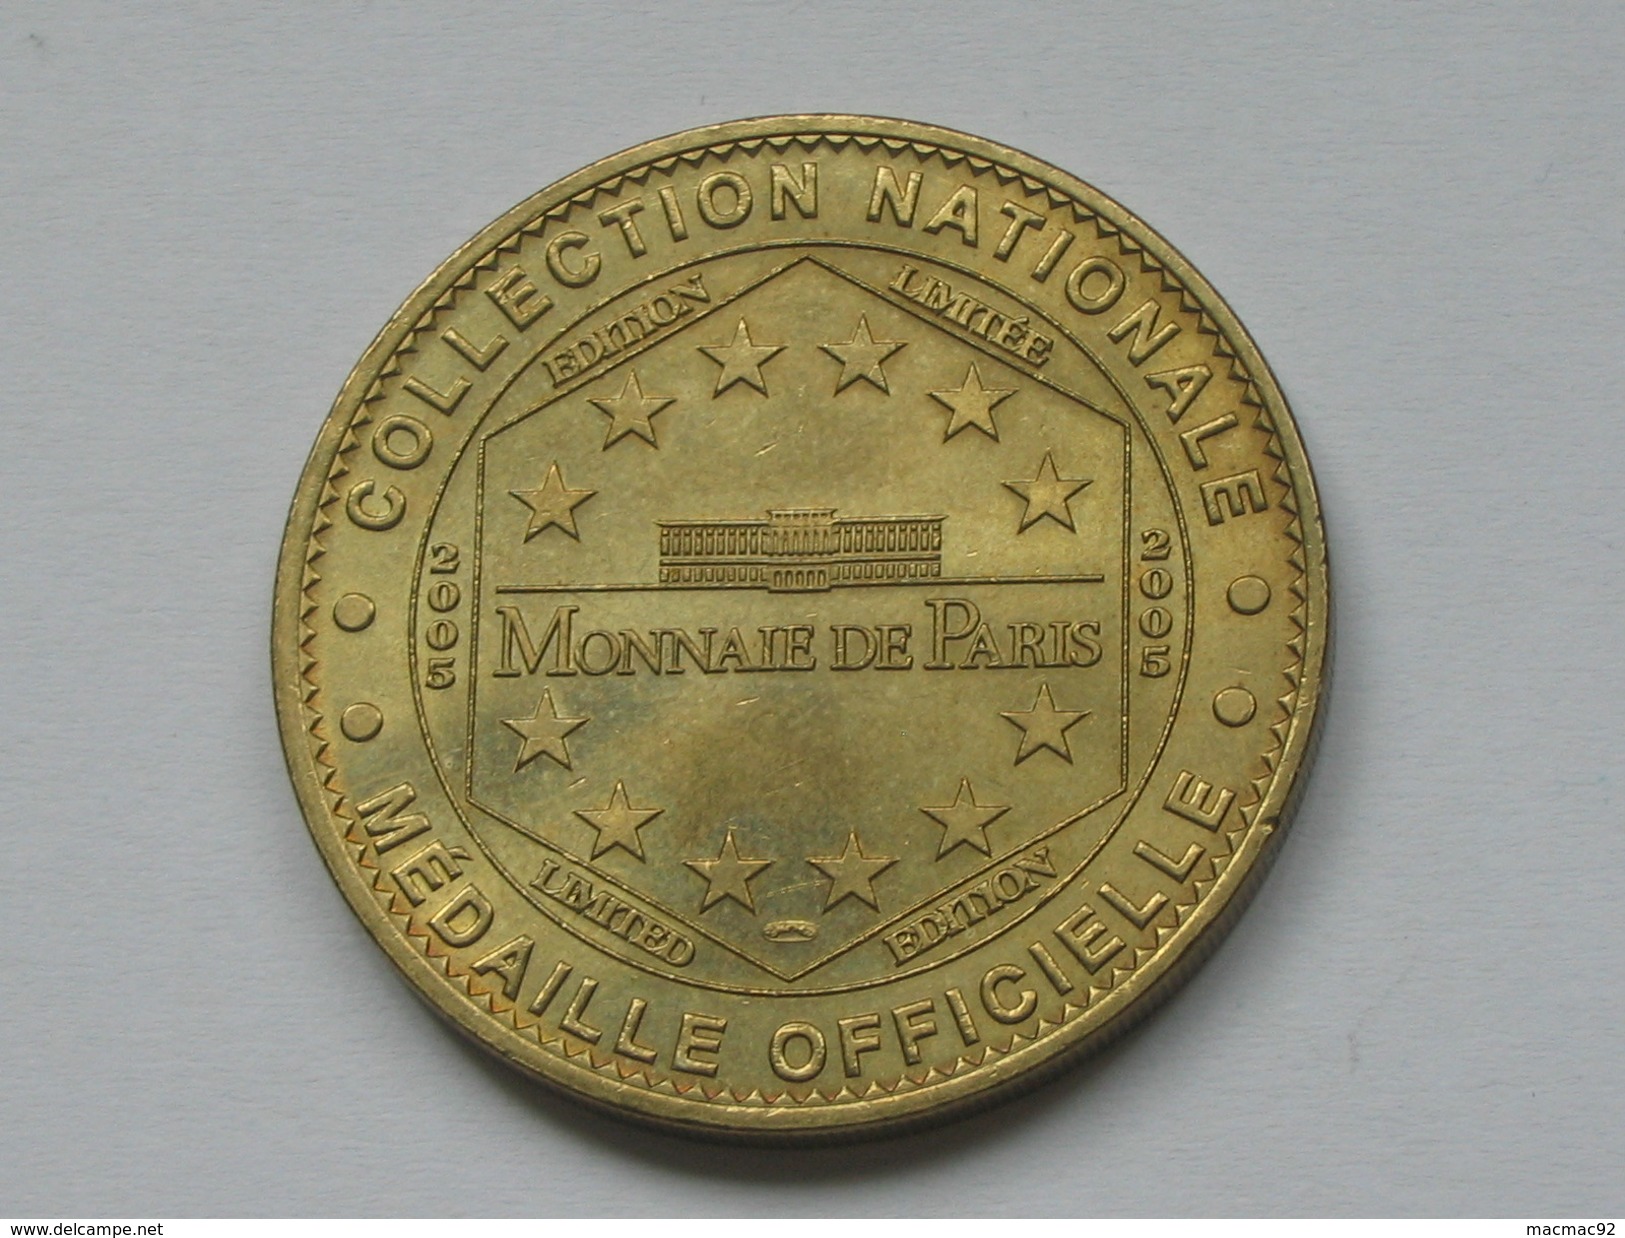 Médaille De La Monnaie De Paris 2005 - Grotte Des Demoiselles - LANGUEDOC  **** EN ACHAT IMMEDIAT  **** - 2005